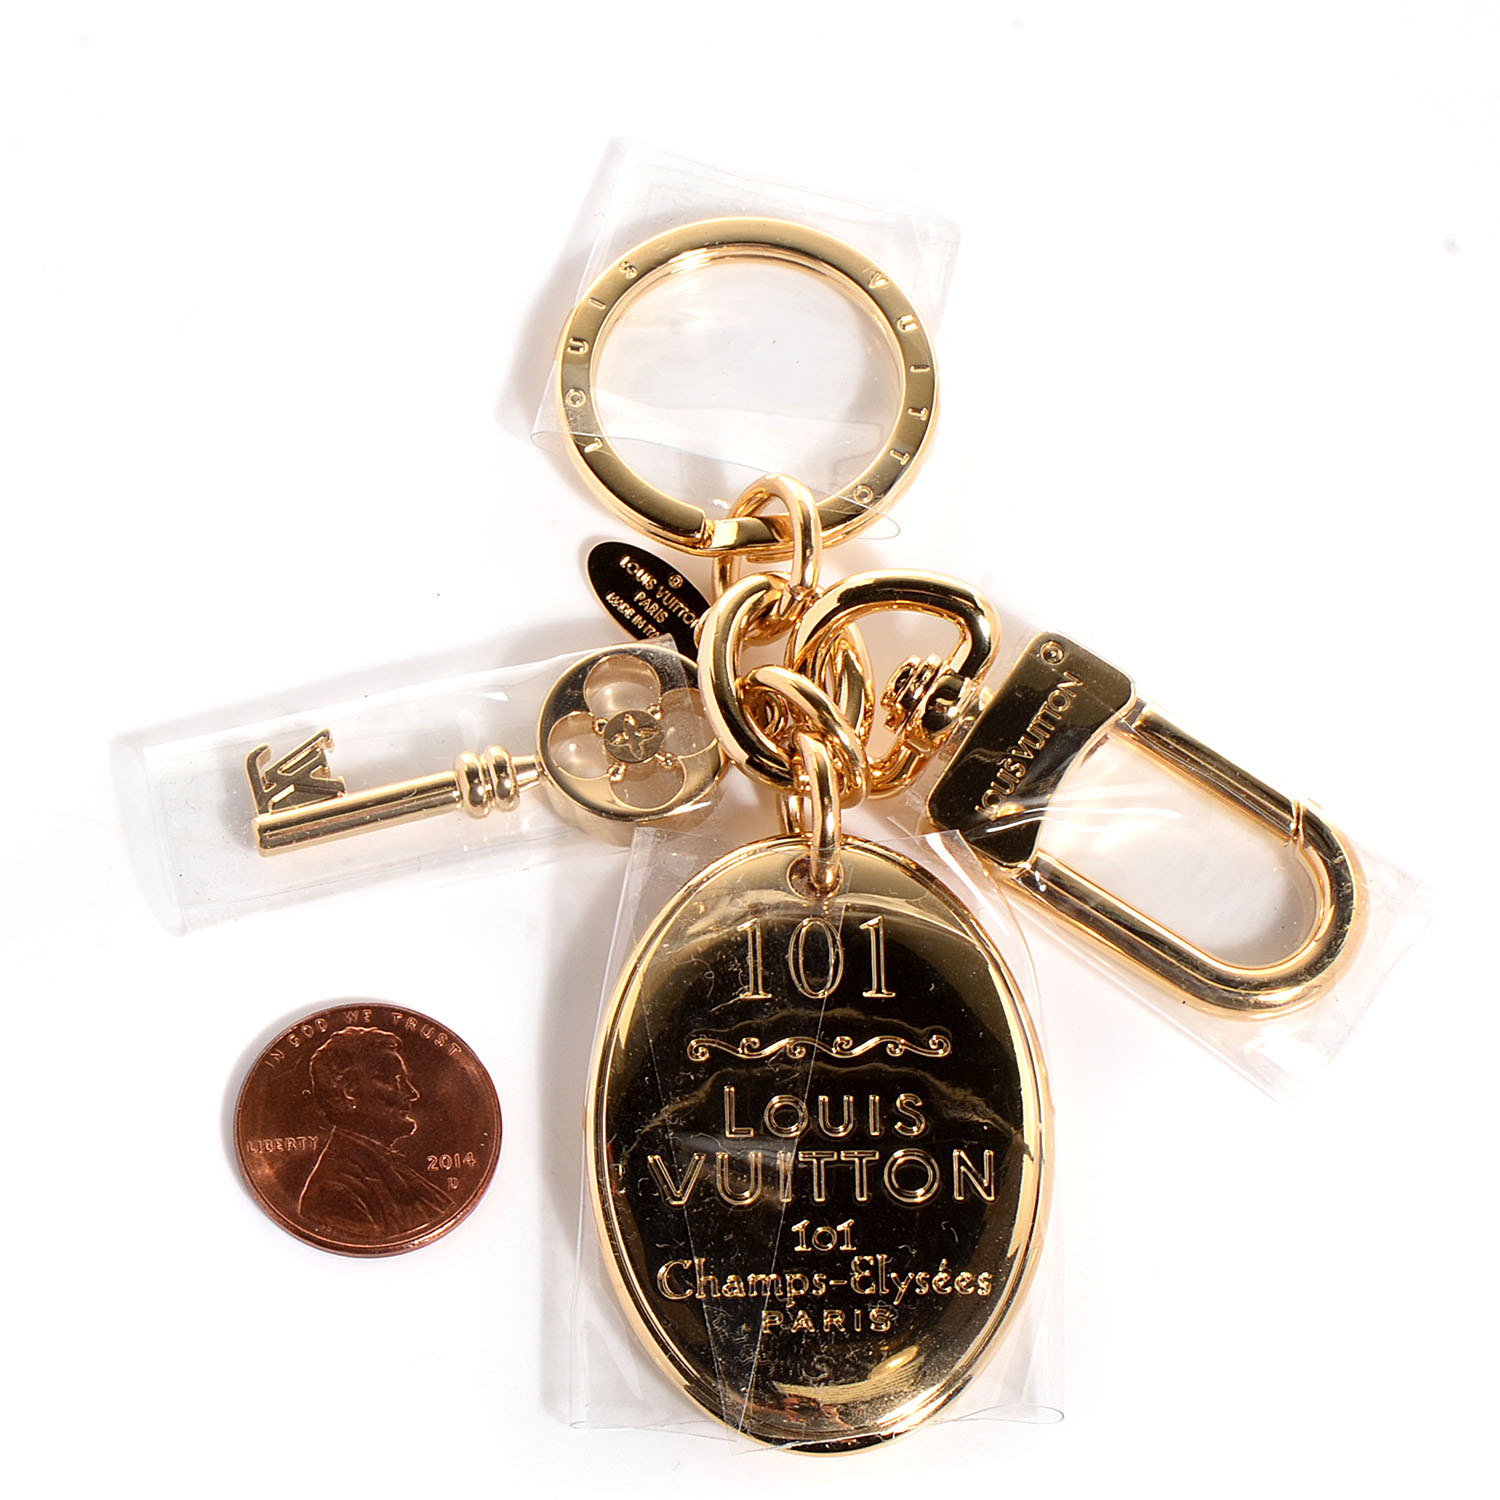 LOUIS VUITTON 101 Champs Elysees Maison Key Charm Gold 90545